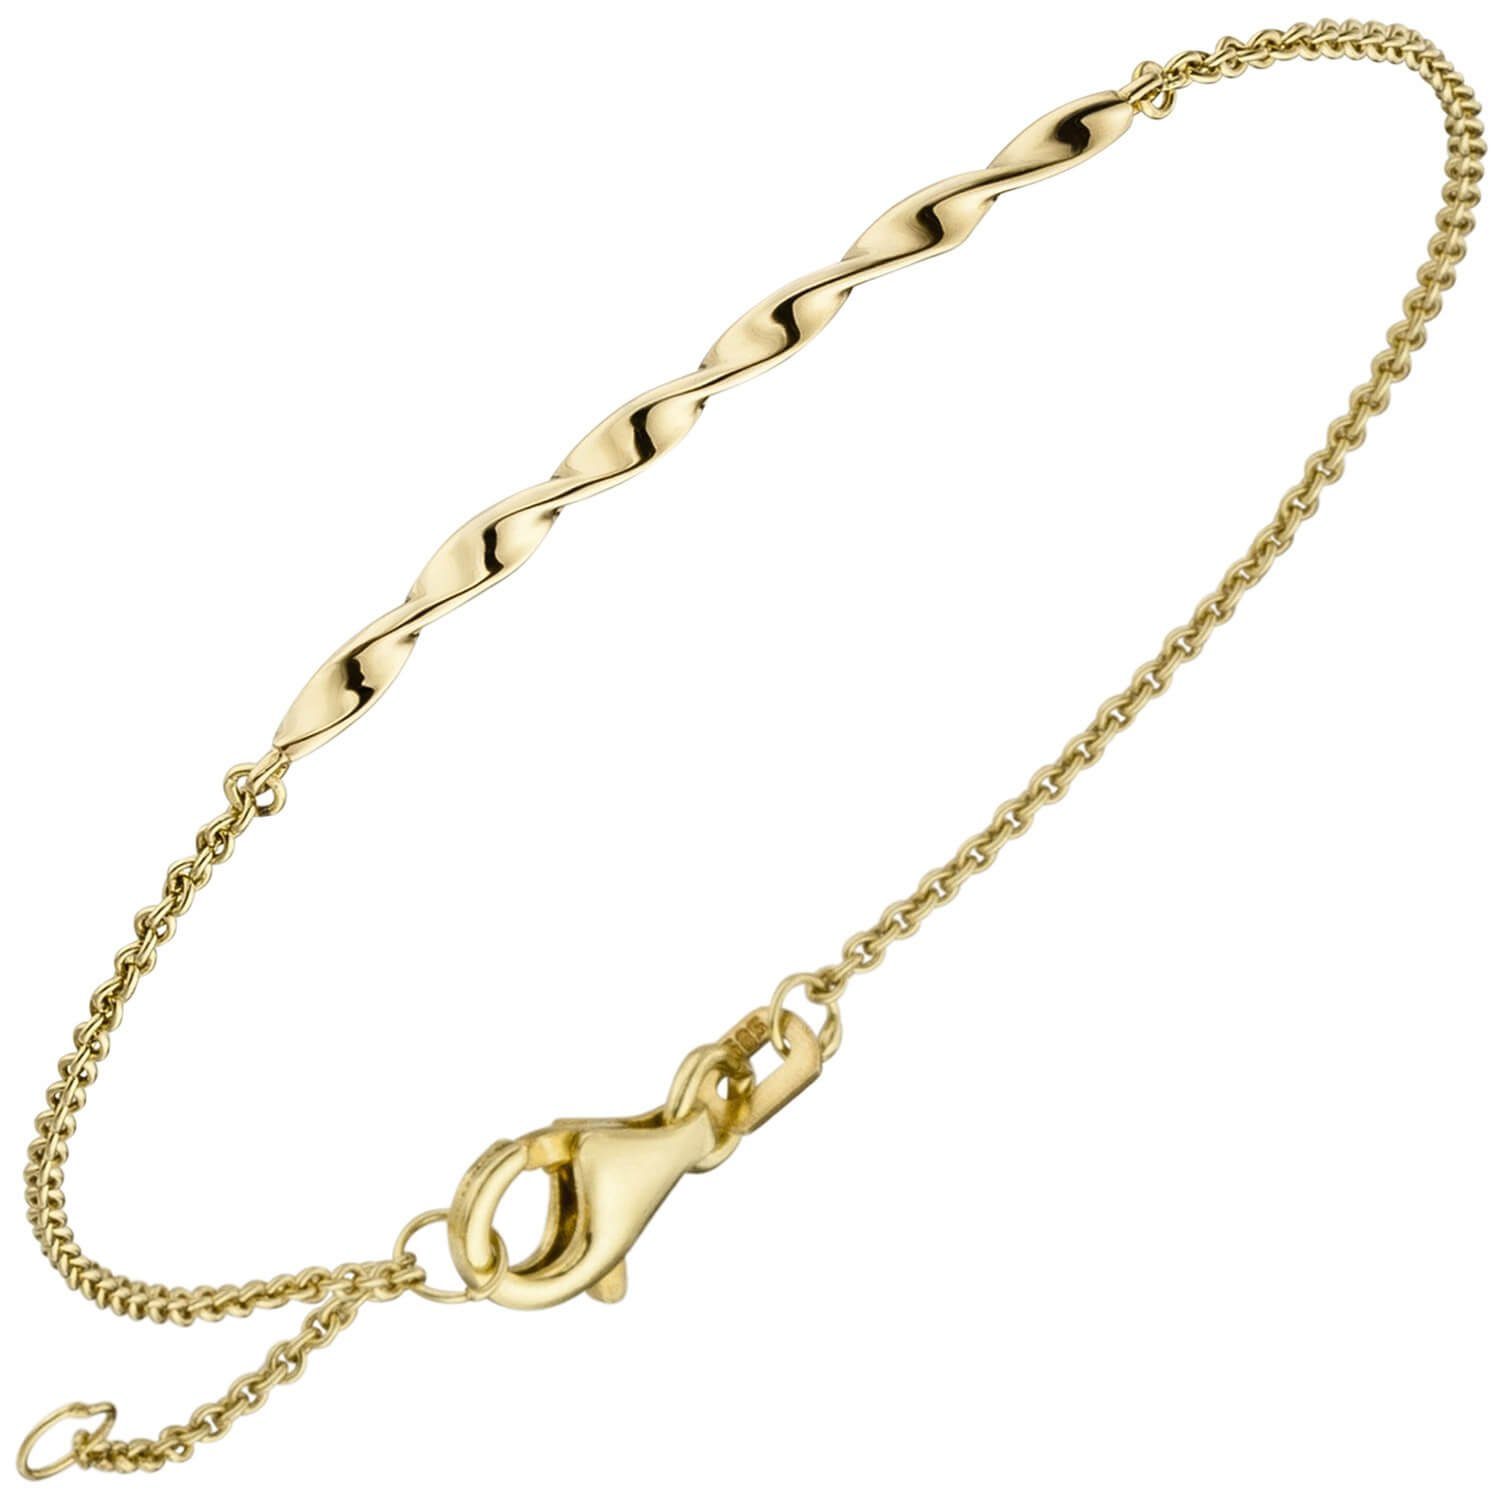 Schmuck Krone Goldarmband Armband aus 585 Gold Gelbgold glänzend mittleres Teil gedreht 15,5-17,5cm